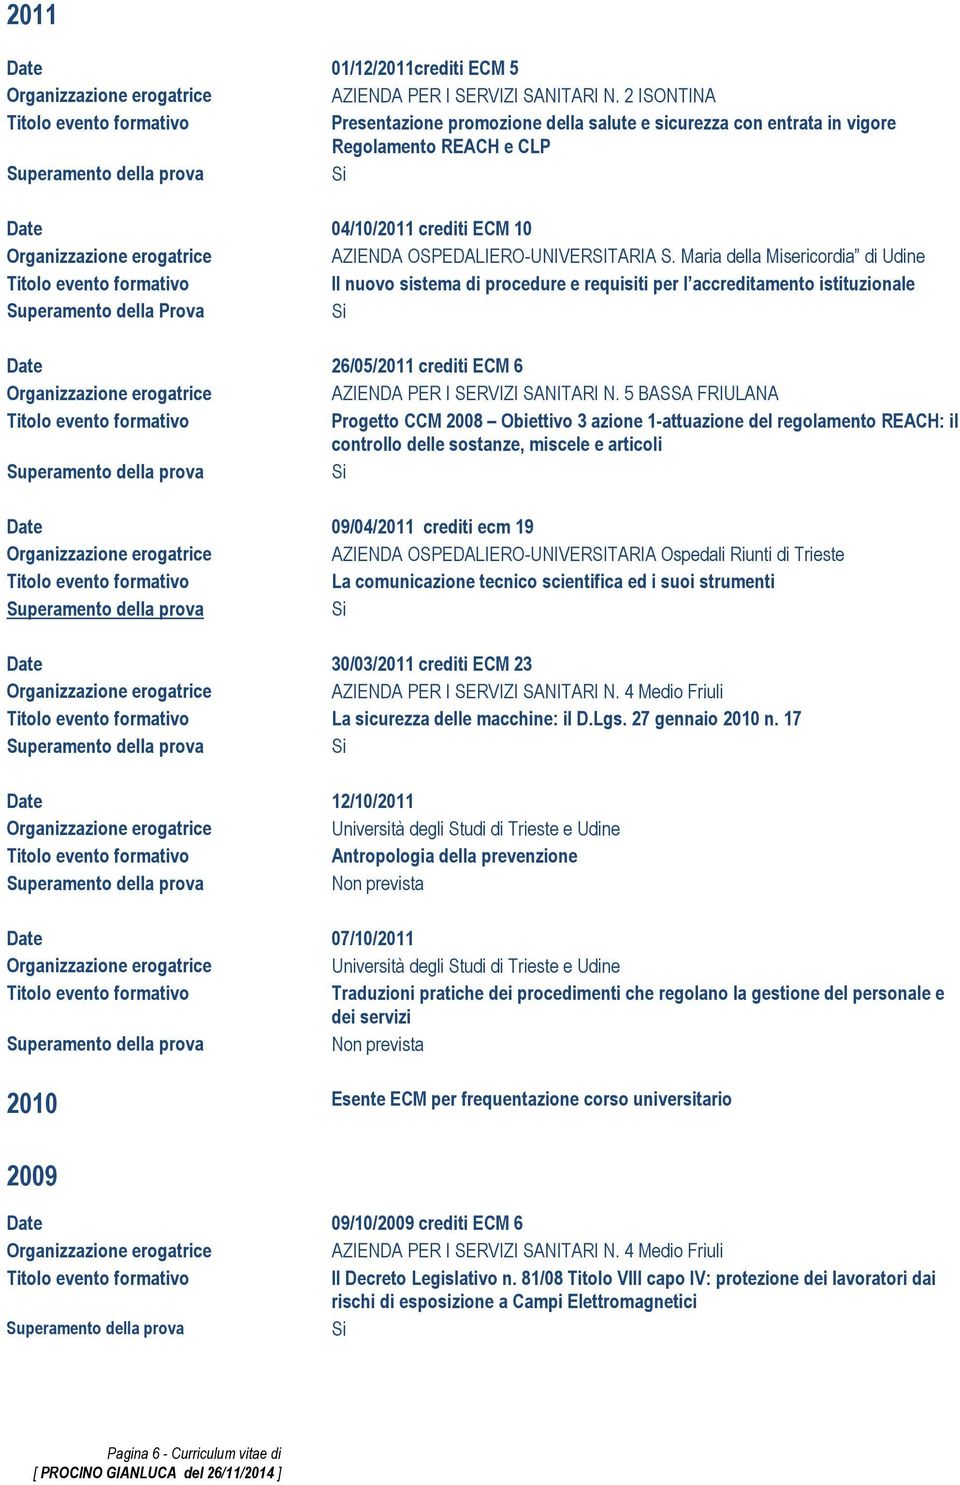 5 BASSA FRIULANA Progetto CCM 2008 Obiettivo 3 azione 1-attuazione del regolamento REACH: il controllo delle sostanze, miscele e articoli 09/04/2011 crediti ecm 19 AZIENDA OSPEDALIERO-UNIVERSITARIA